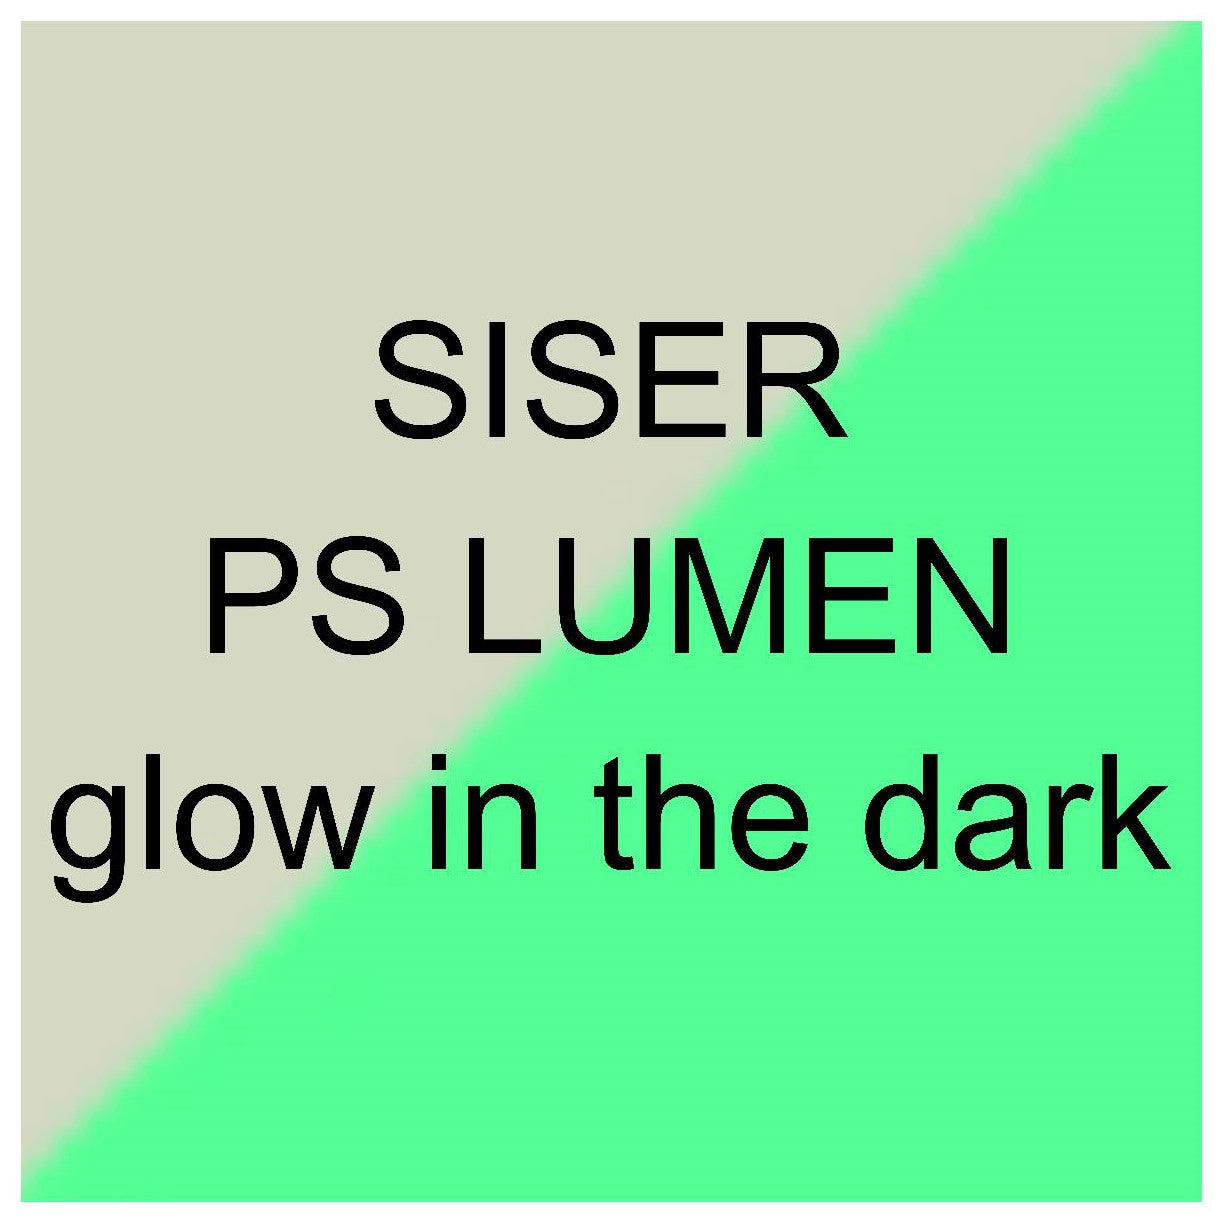 Siser P.S Lumen Glow in the dark flex